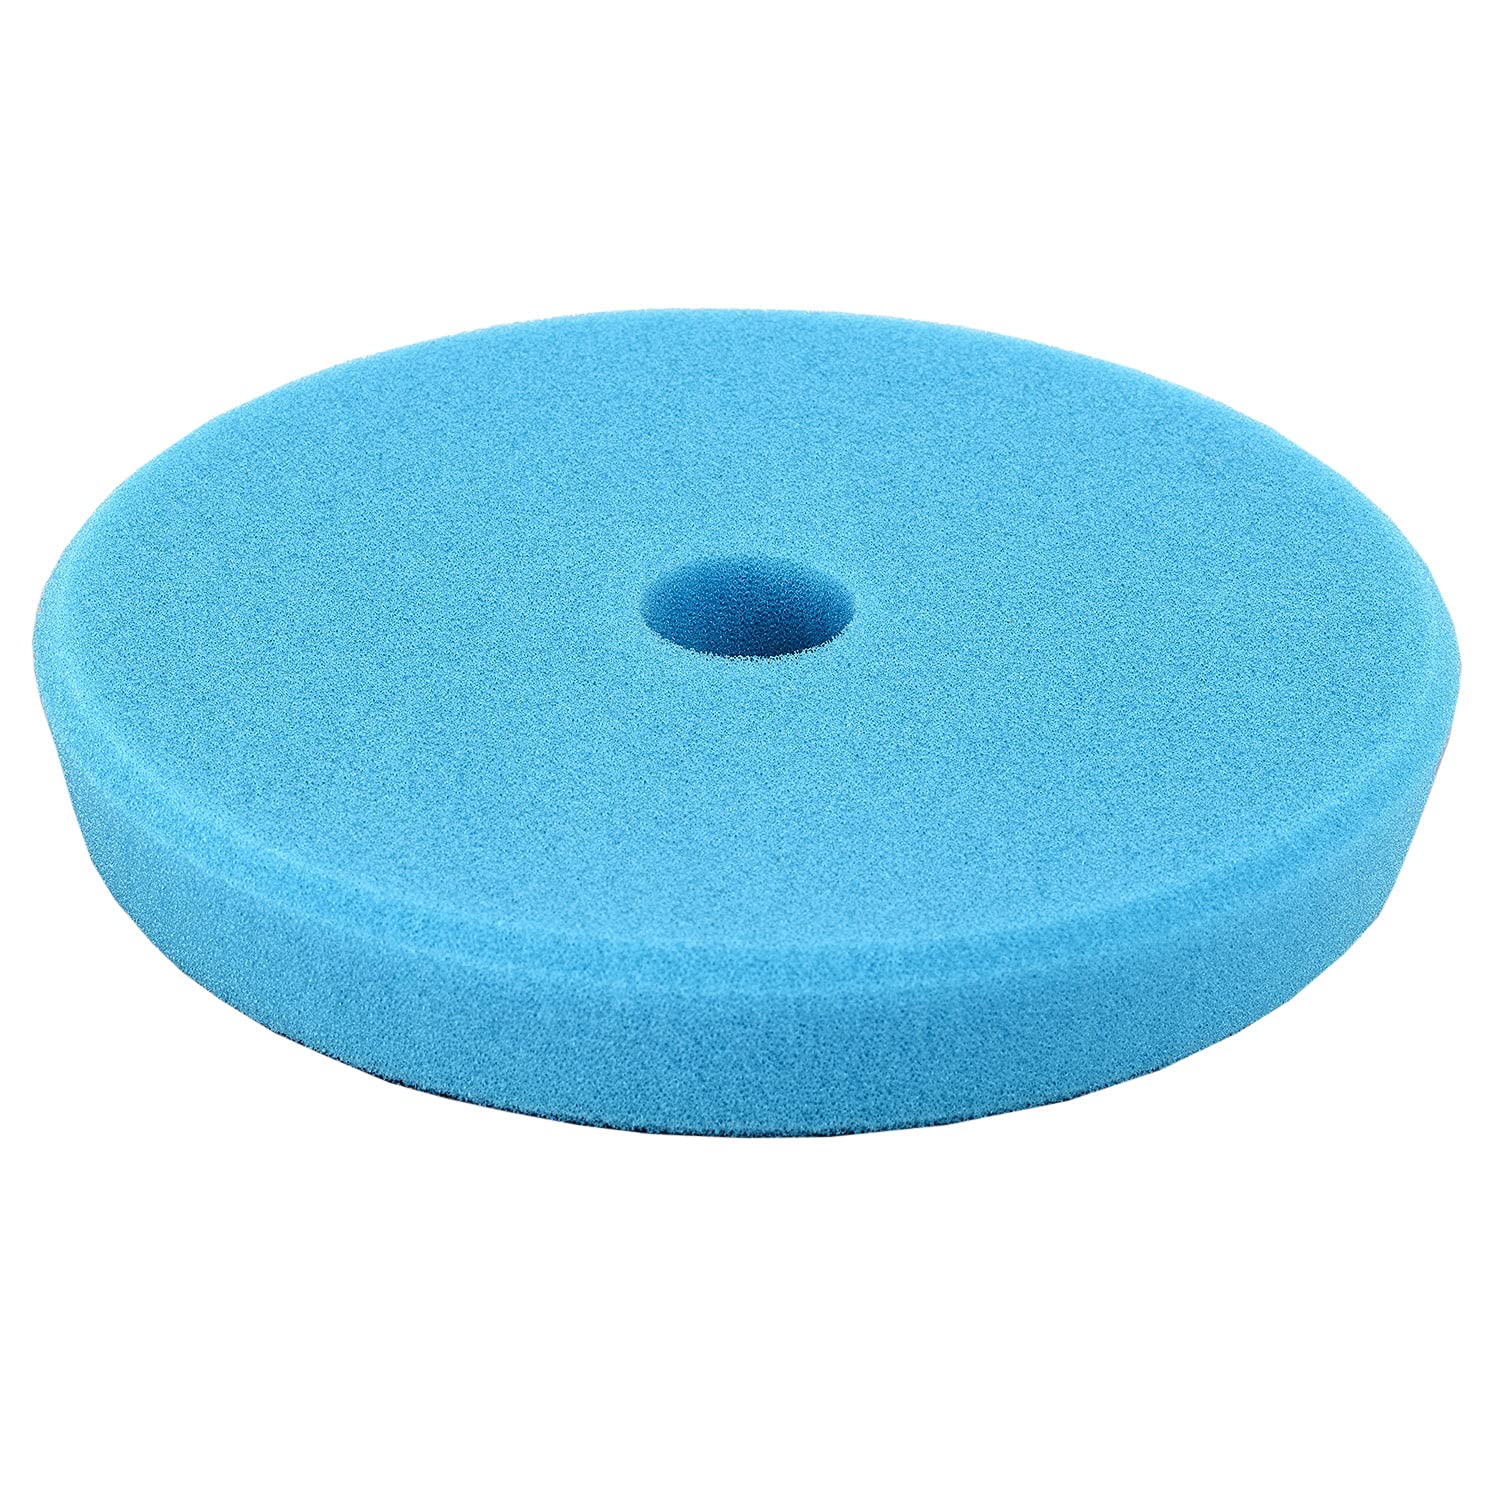 Polytop One-Step Pad Excenter blau 140 x 25 mm - Polierpad für Exzenter Poliermaschinen - Auto Politur Zubehör von Polytop